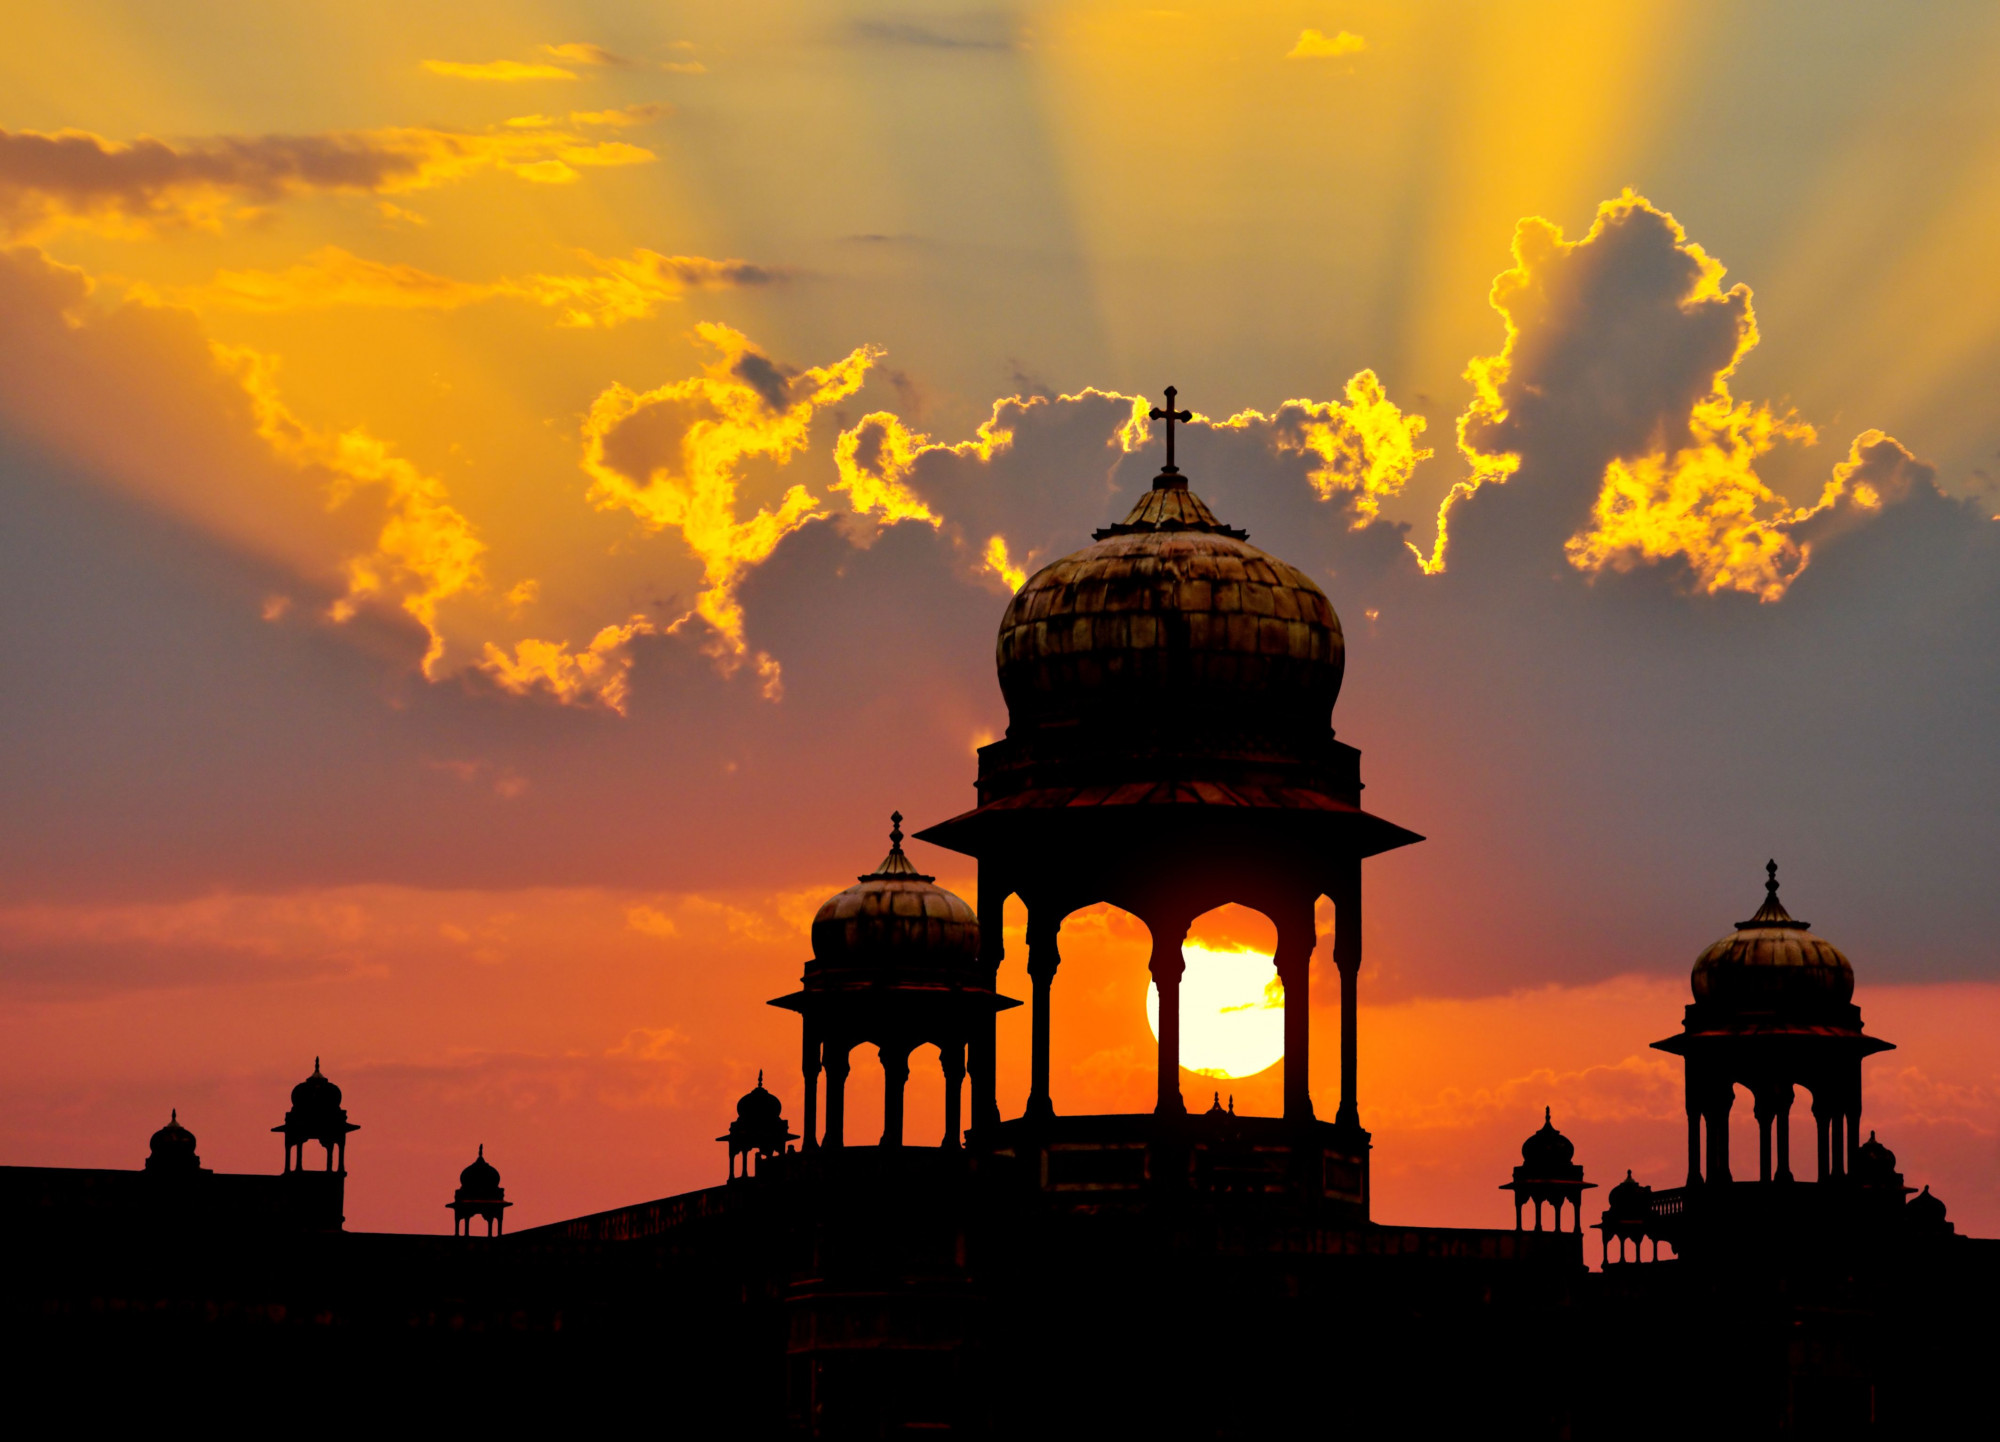 2. Xem sự giàu có của Rajasthan Rajasthan là bang lớn nhất của Ấn Độ và là nơi lý tưởng để lặn sâu hơn một chút. Wendy Wu's Rajasthan Panorama là một tour du lịch nhóm cổ điển kéo dài 22 ngày, thu thập những điểm nổi bật của khu vực thành một gói gọn gàng. Bạn sẽ tìm hiểu về các maharajahs, xem các cung điện, thăm các pháo đài khổng lồ, khám phá “Thành phố xanh” của Jodhpur và du ngoạn trên những hồ nước đẹp như tranh vẽ. Bạn sẽ phong phú hơn cho kinh nghiệm. Công viên quốc gia Ranthambore đặc biệt bởi nếu may mắn, bạn có thể bắt gặp một con hổ trong tự nhiên. Giá Earlybird có sẵn cho năm 2024. 